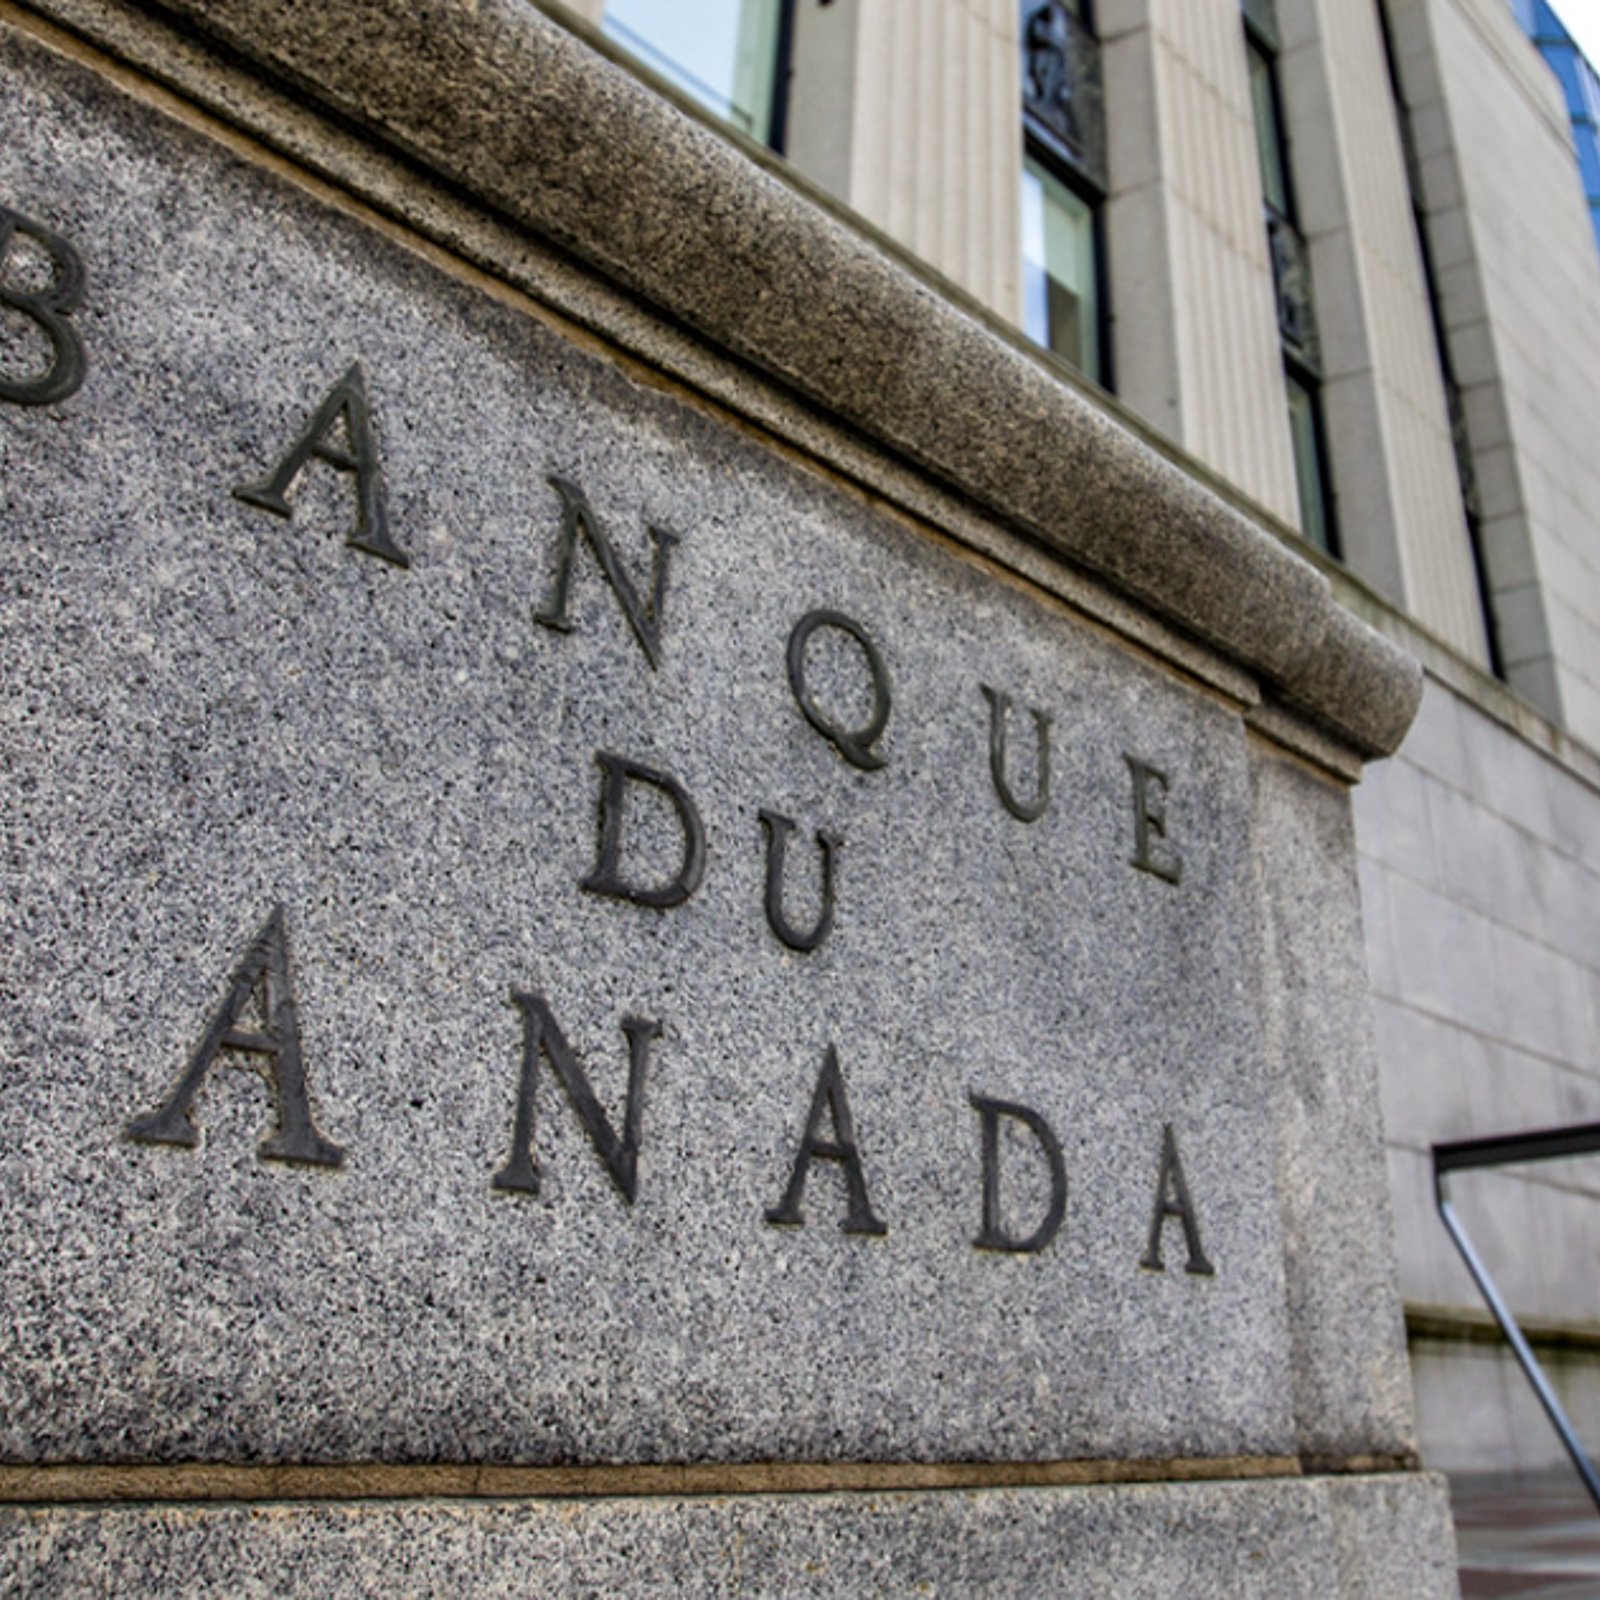 La Banque du Canada vient d'annoncer sa décision concernant le taux directeur 